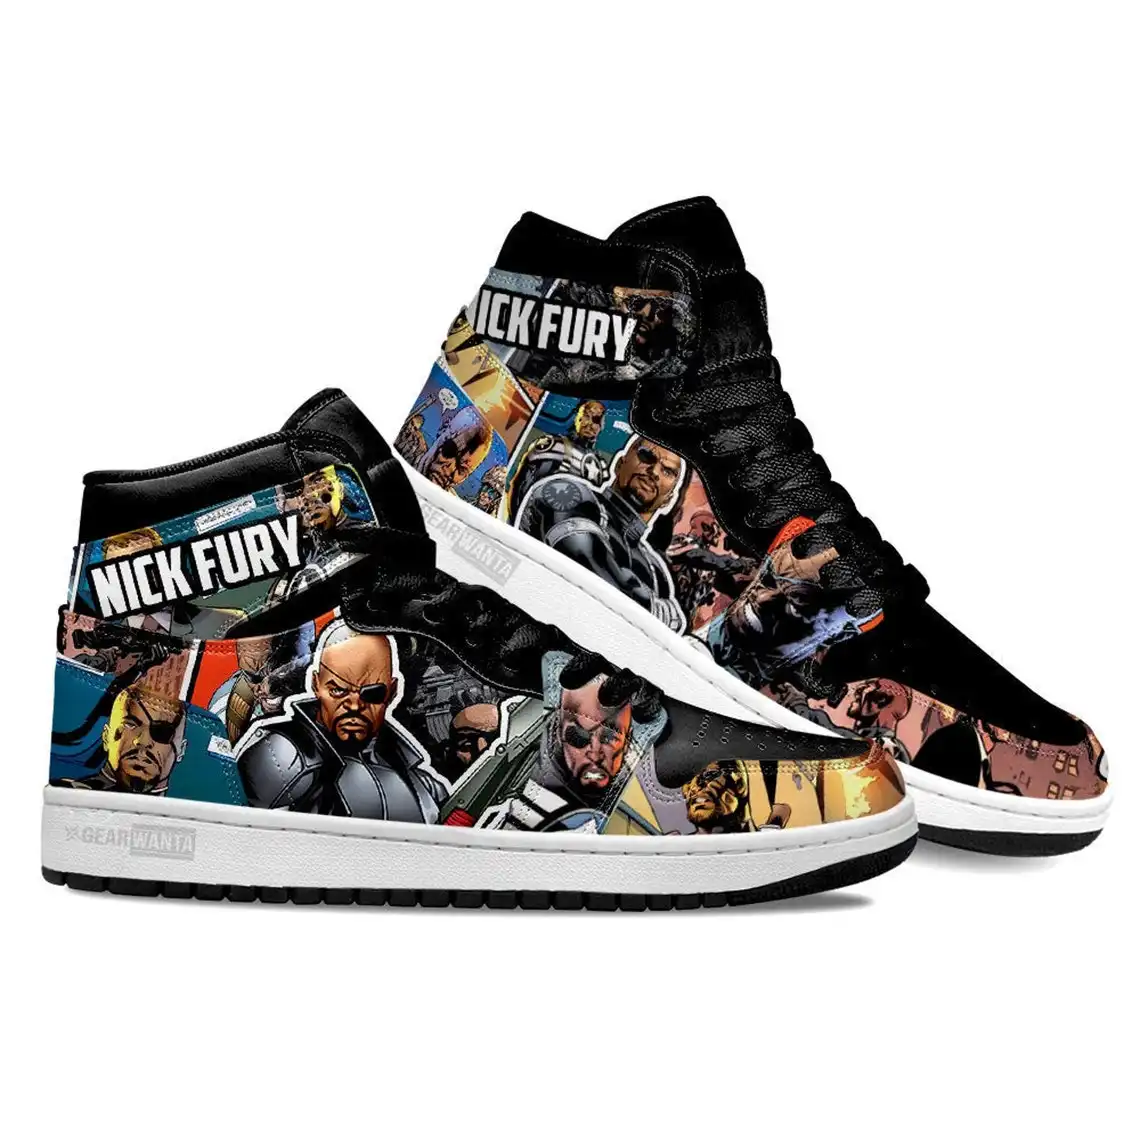 Avenger Nick Furry Super Heroes For Movie Fans - Custom Anime Sneaker For Men And Women Air Jordan Shoes